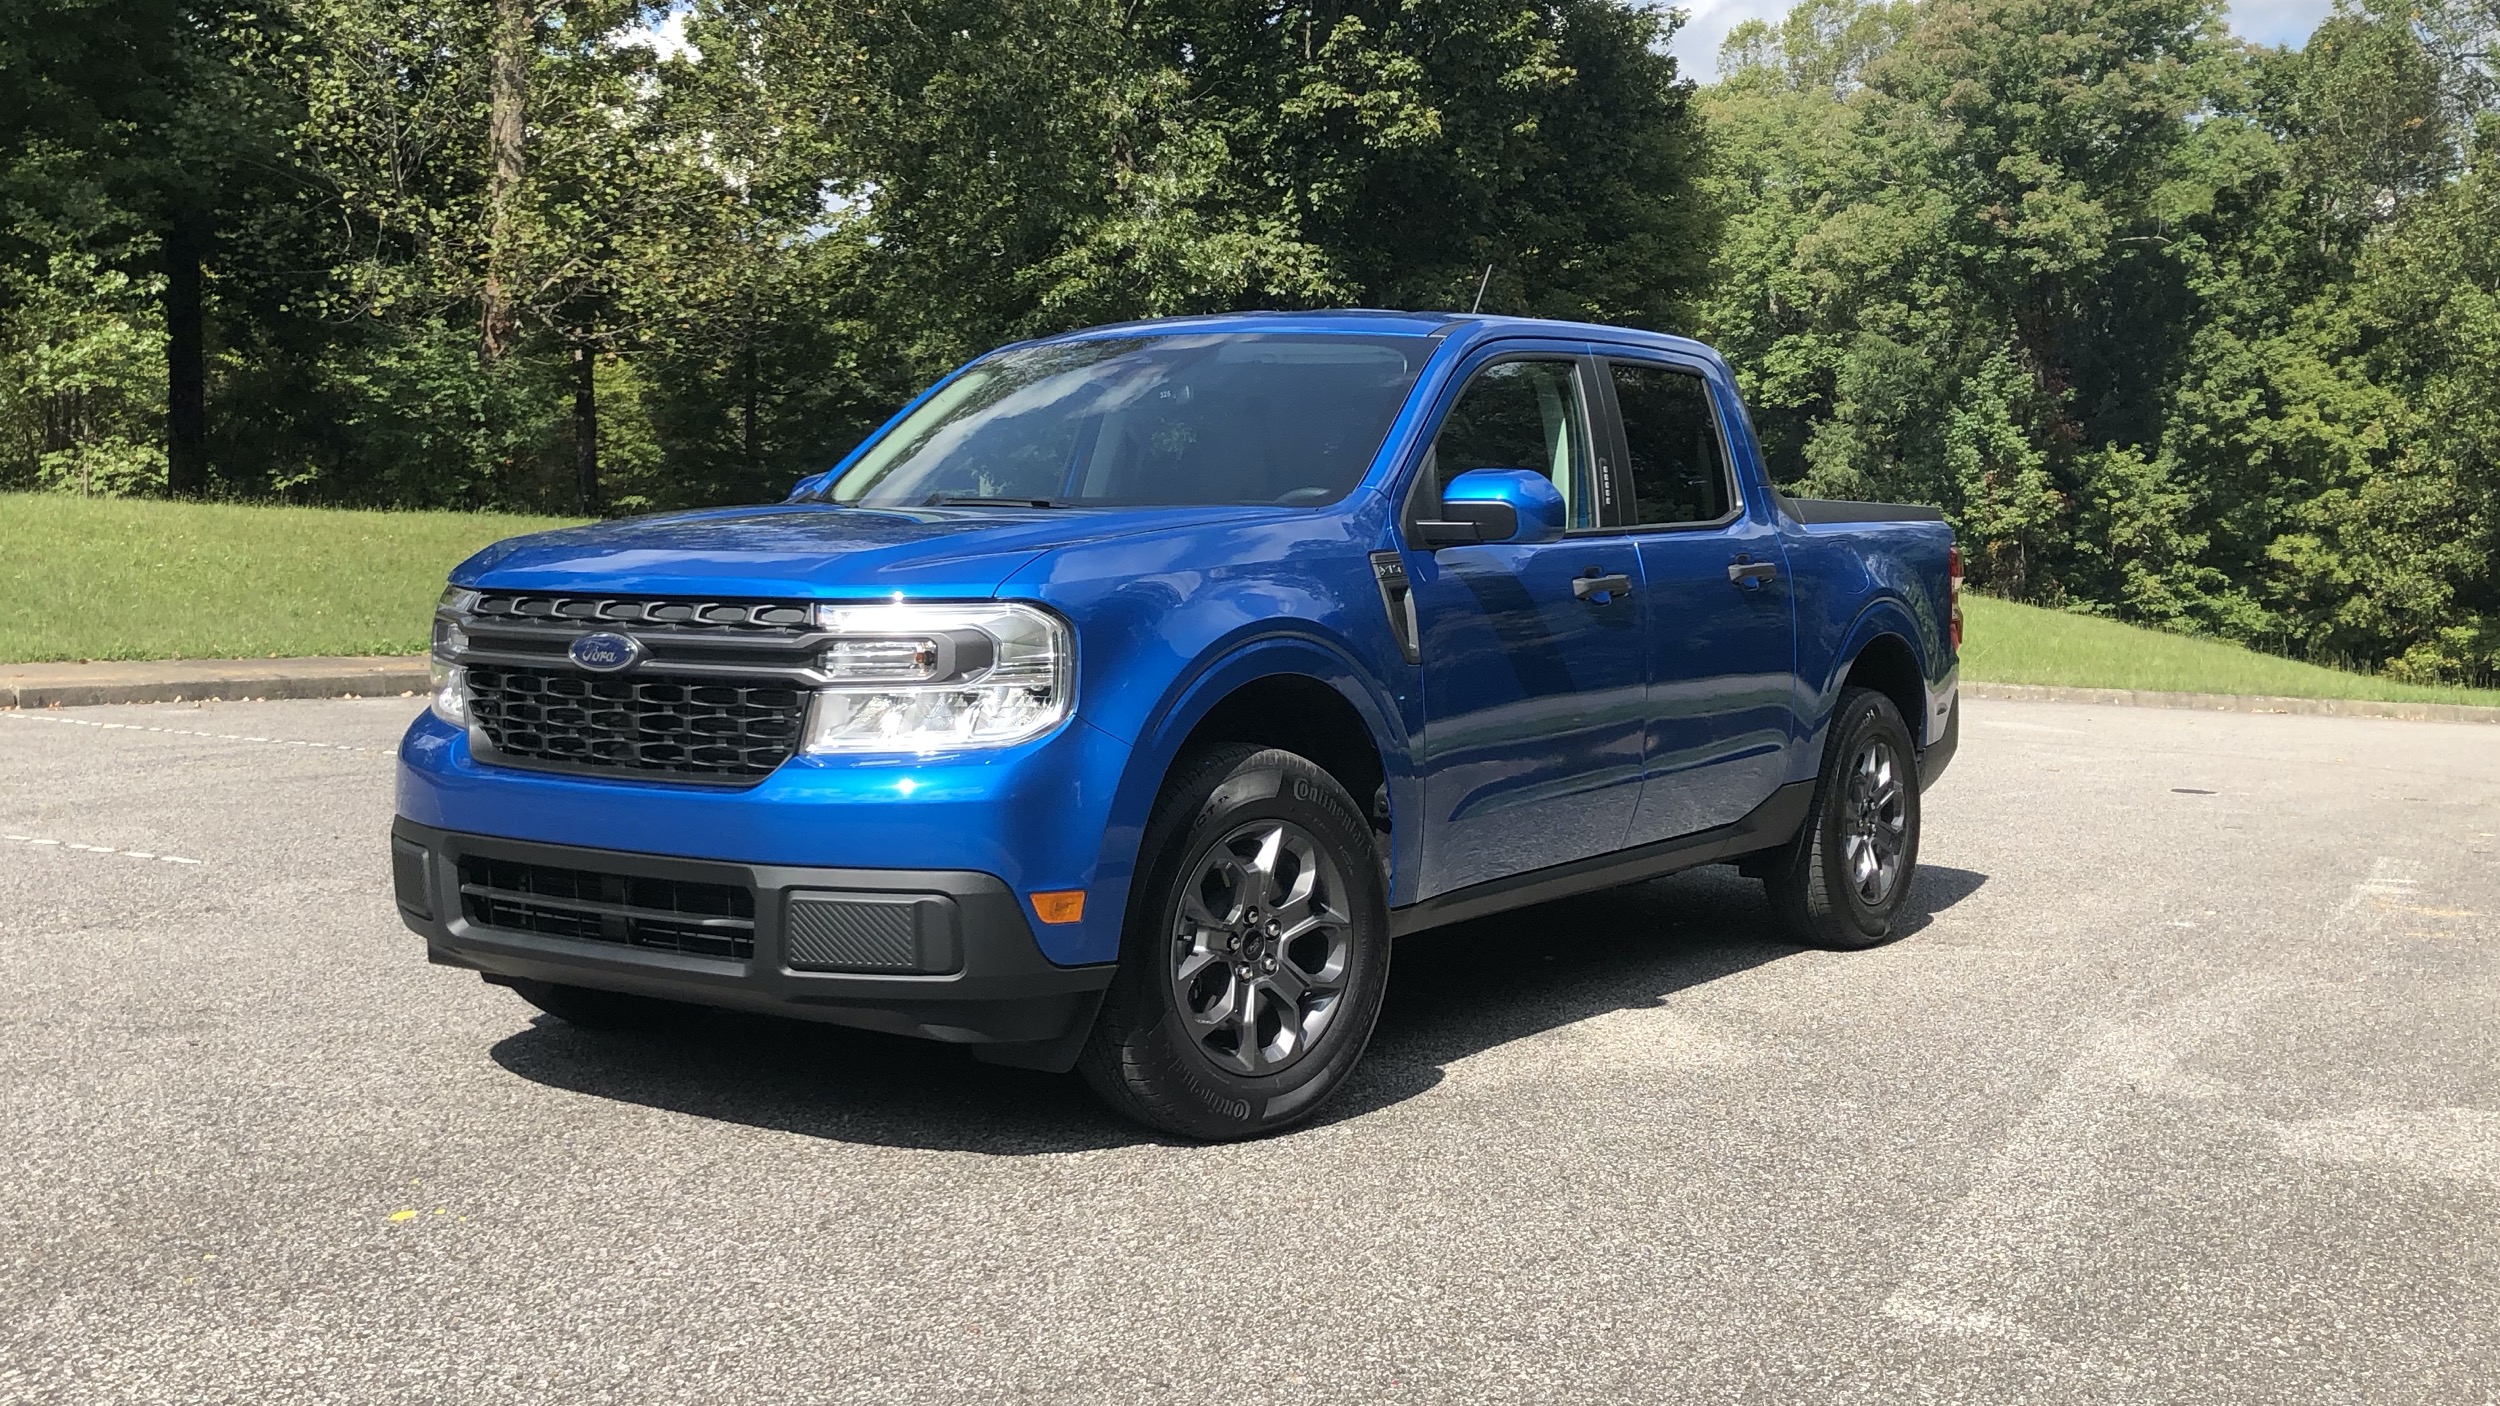 2023 Ford Maverick exterior paint colors leaked Autoblog